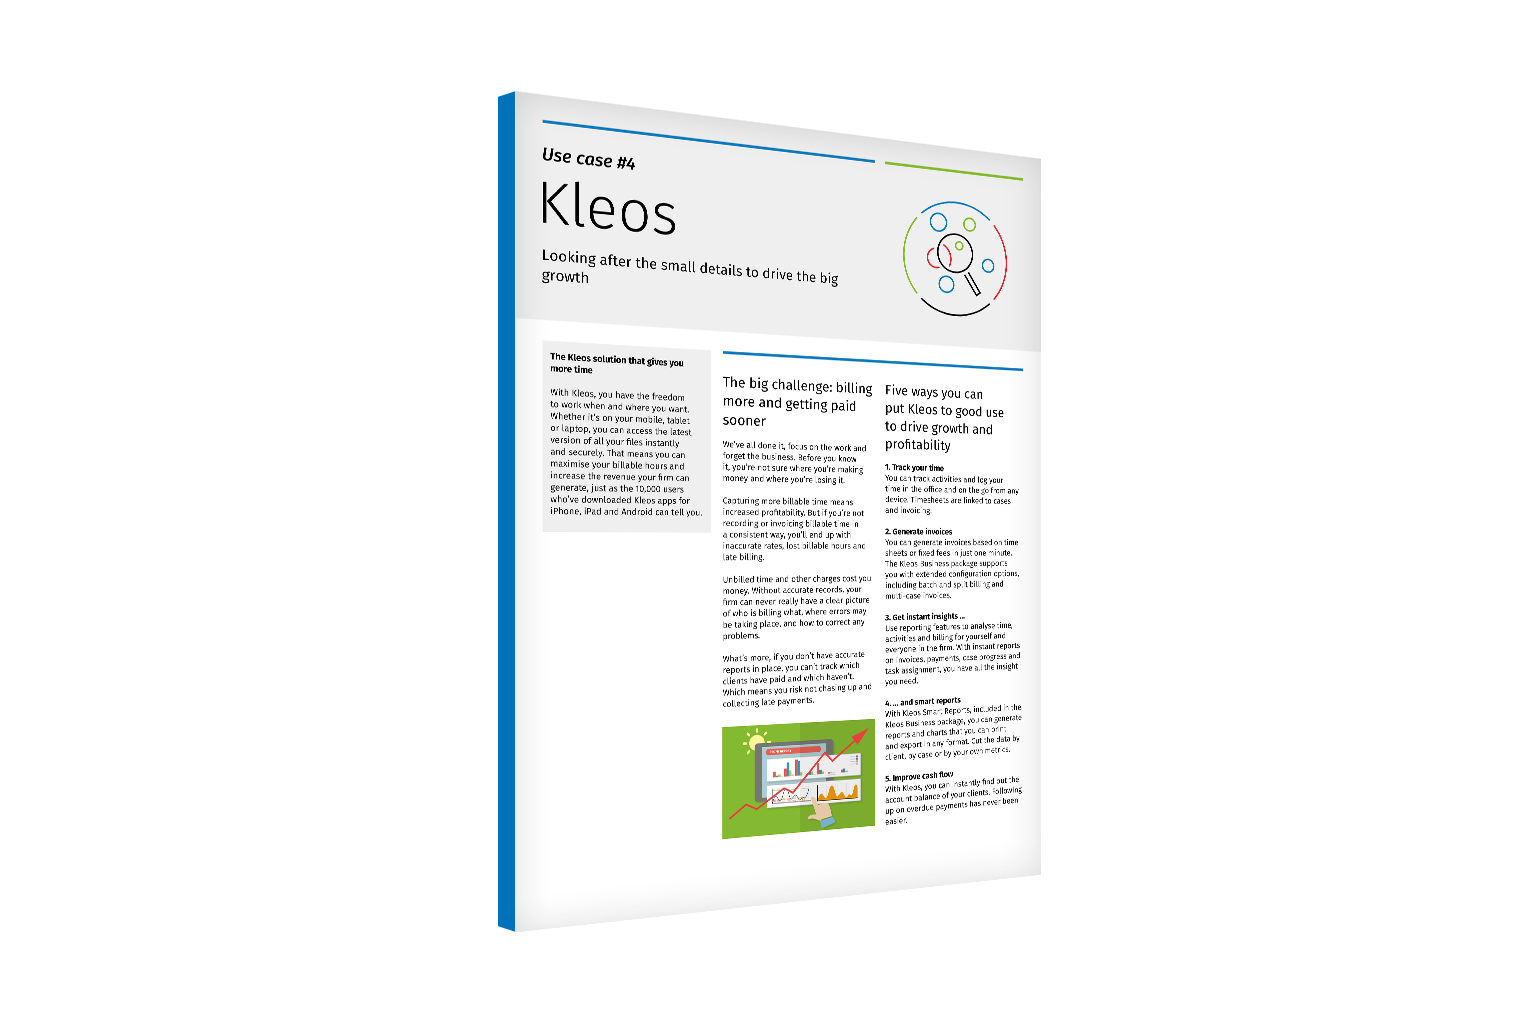 Kleos-Use-Case-4-Driving-Growth-EN-EU-1536x1024